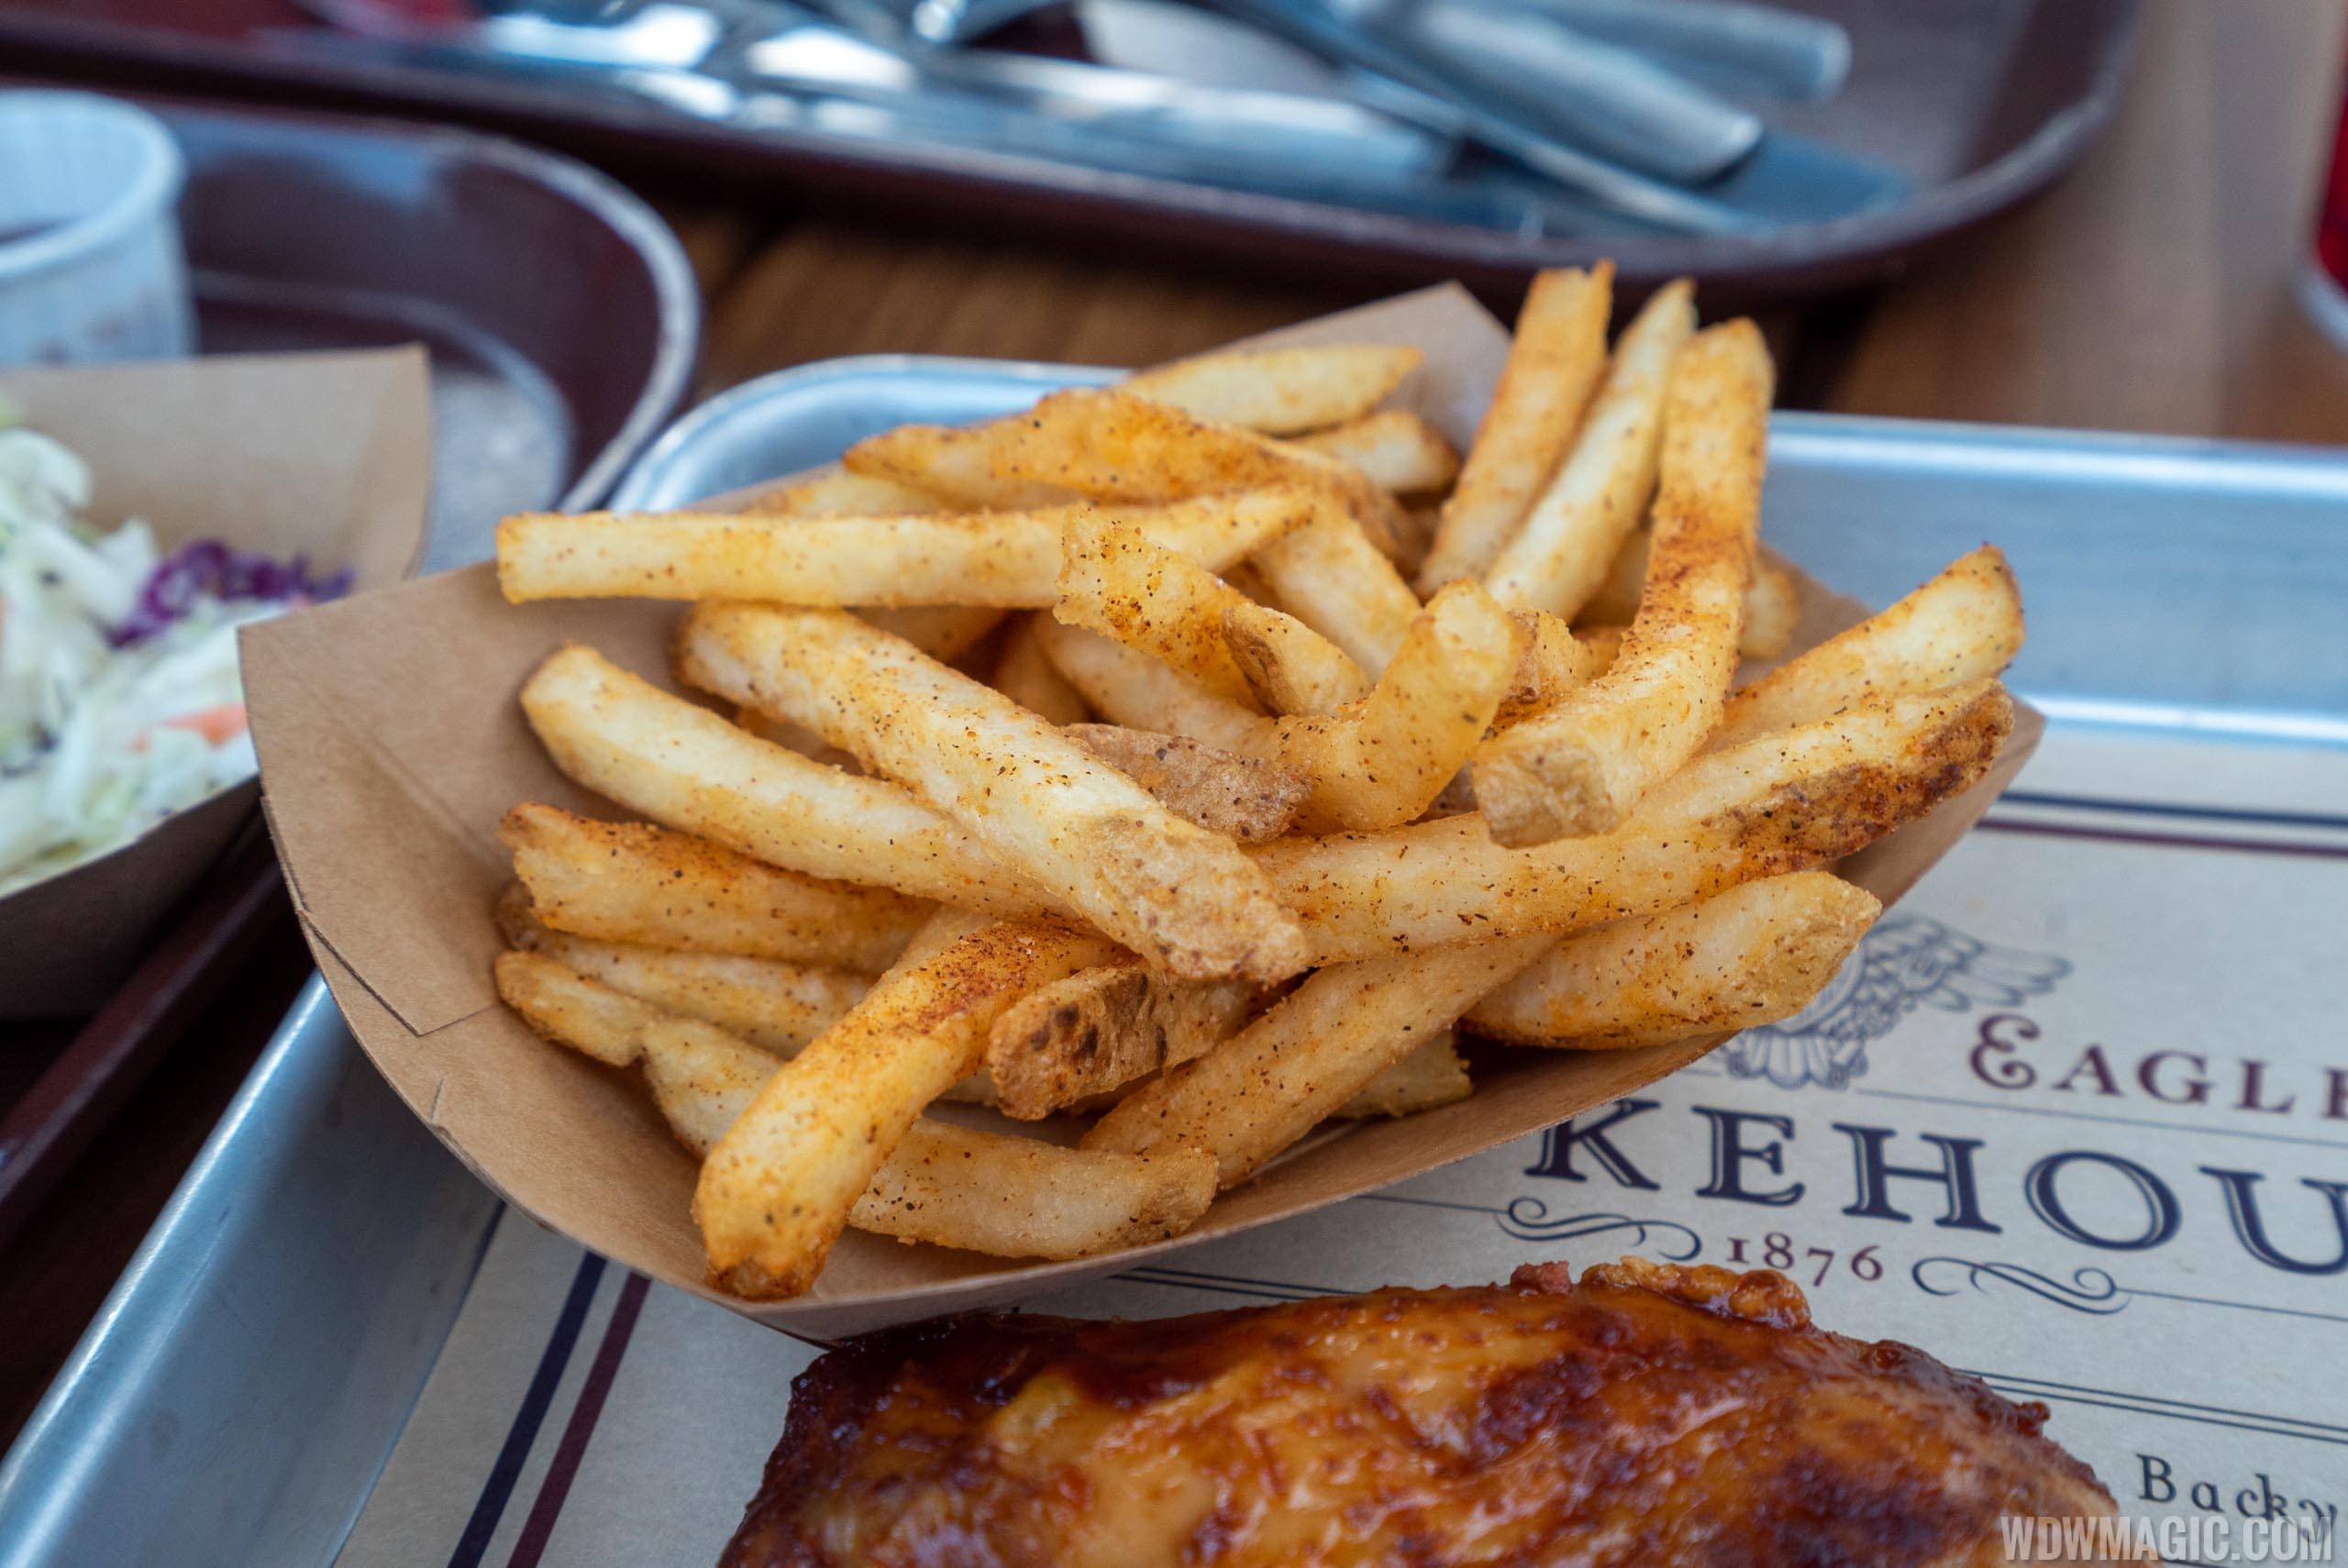 Regal Eagle Smokehouse - Seasoned Fries